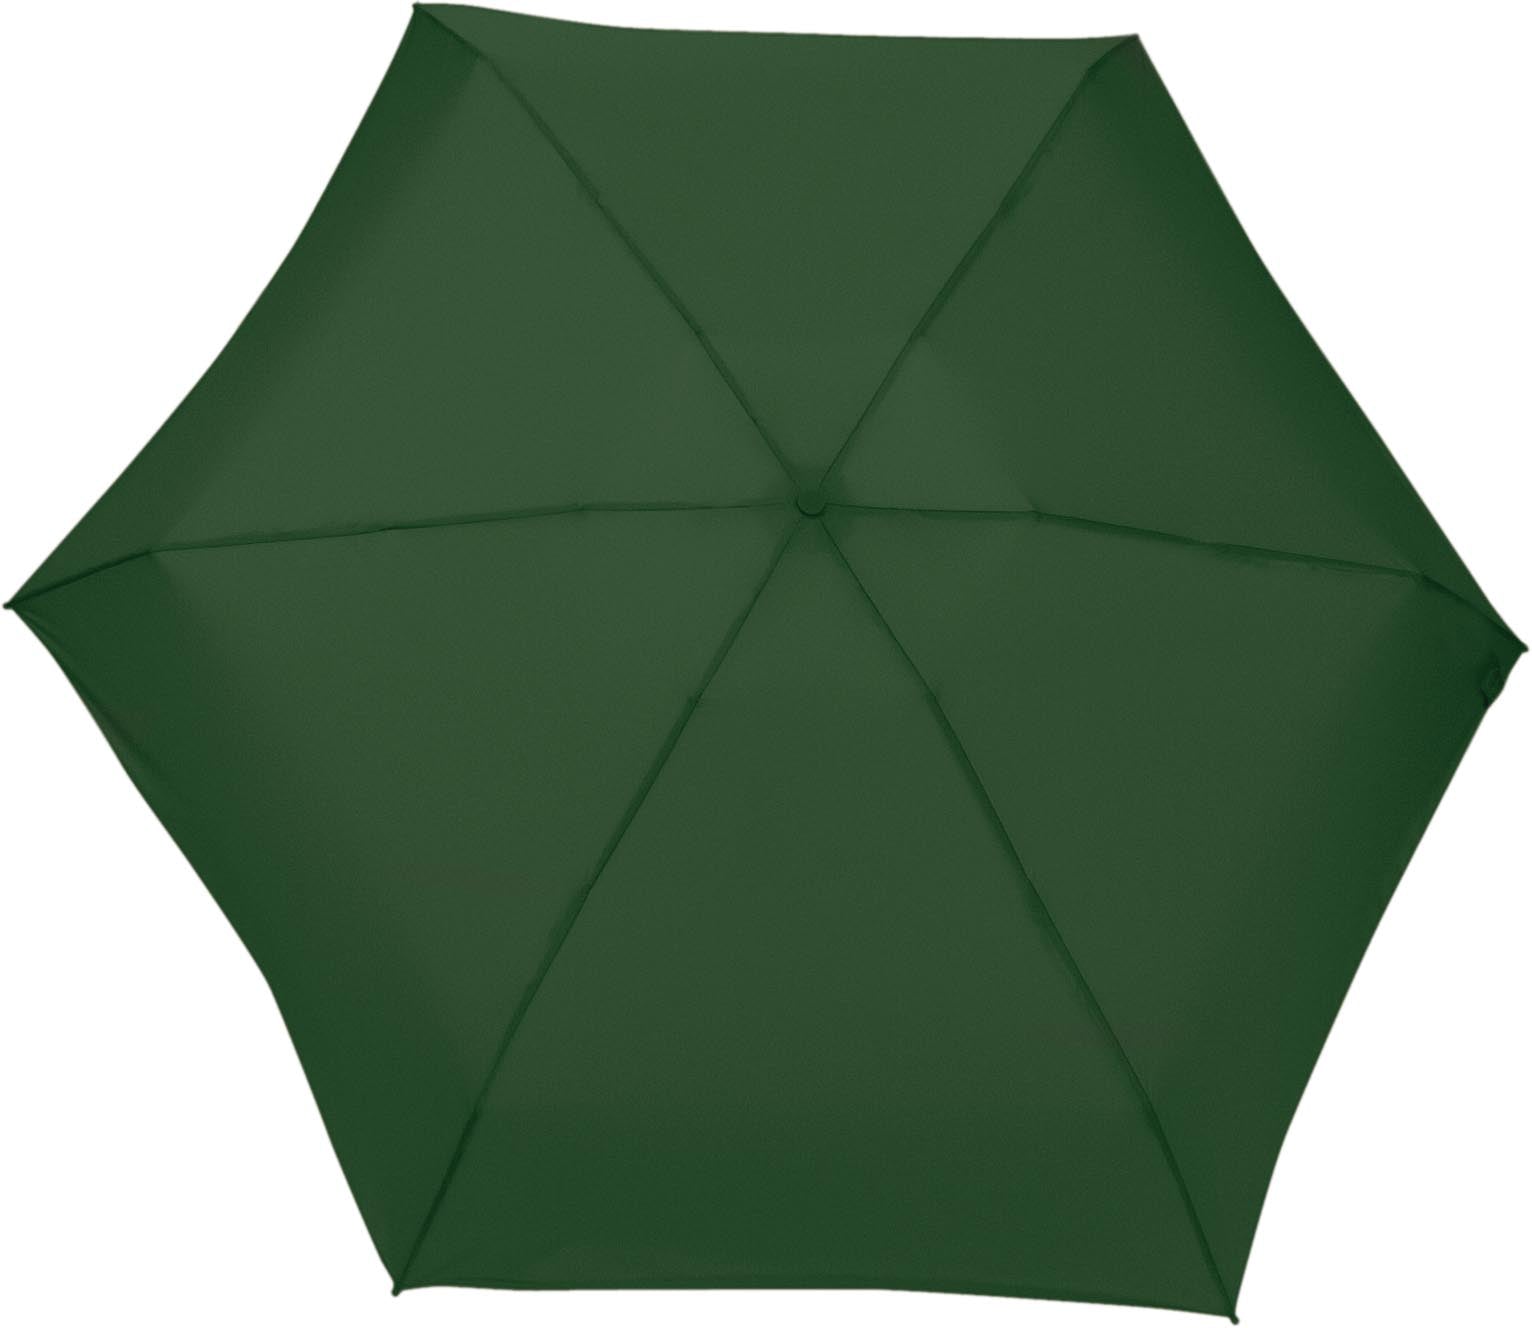 Clima Umbrella - UVP35 Khaki groen